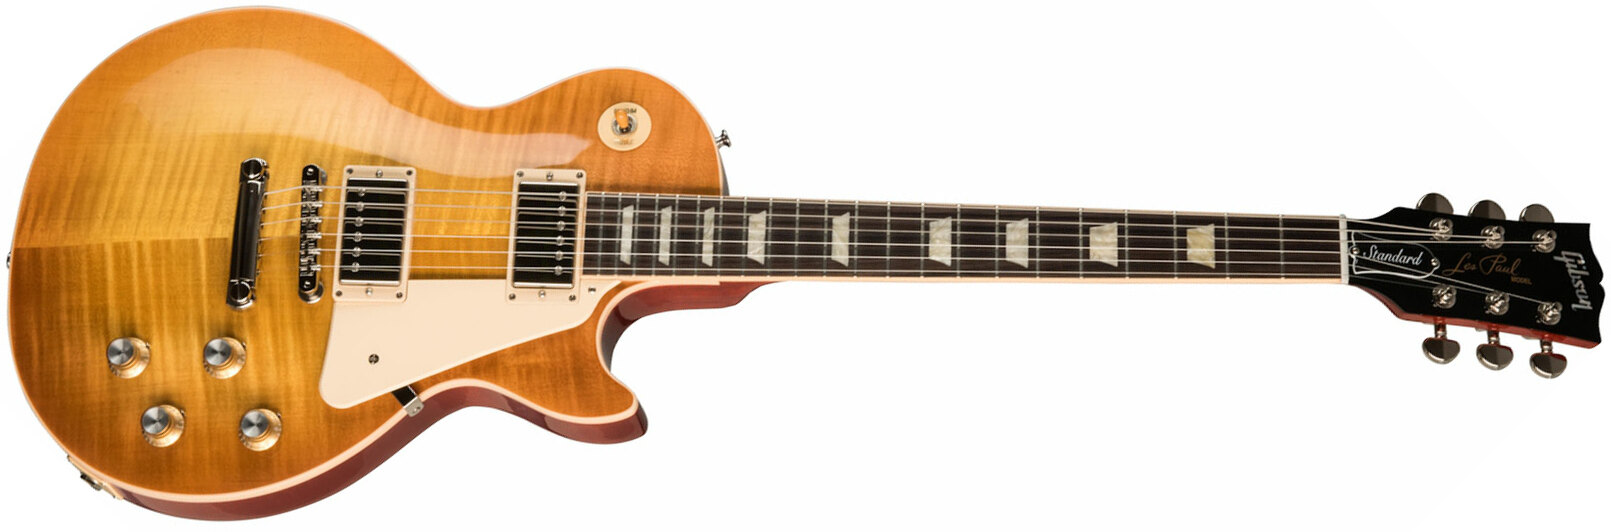 Gibson Les Paul Standard 60s Original 2h Ht Rw - Unburst - Guitare Électrique Single Cut - Main picture